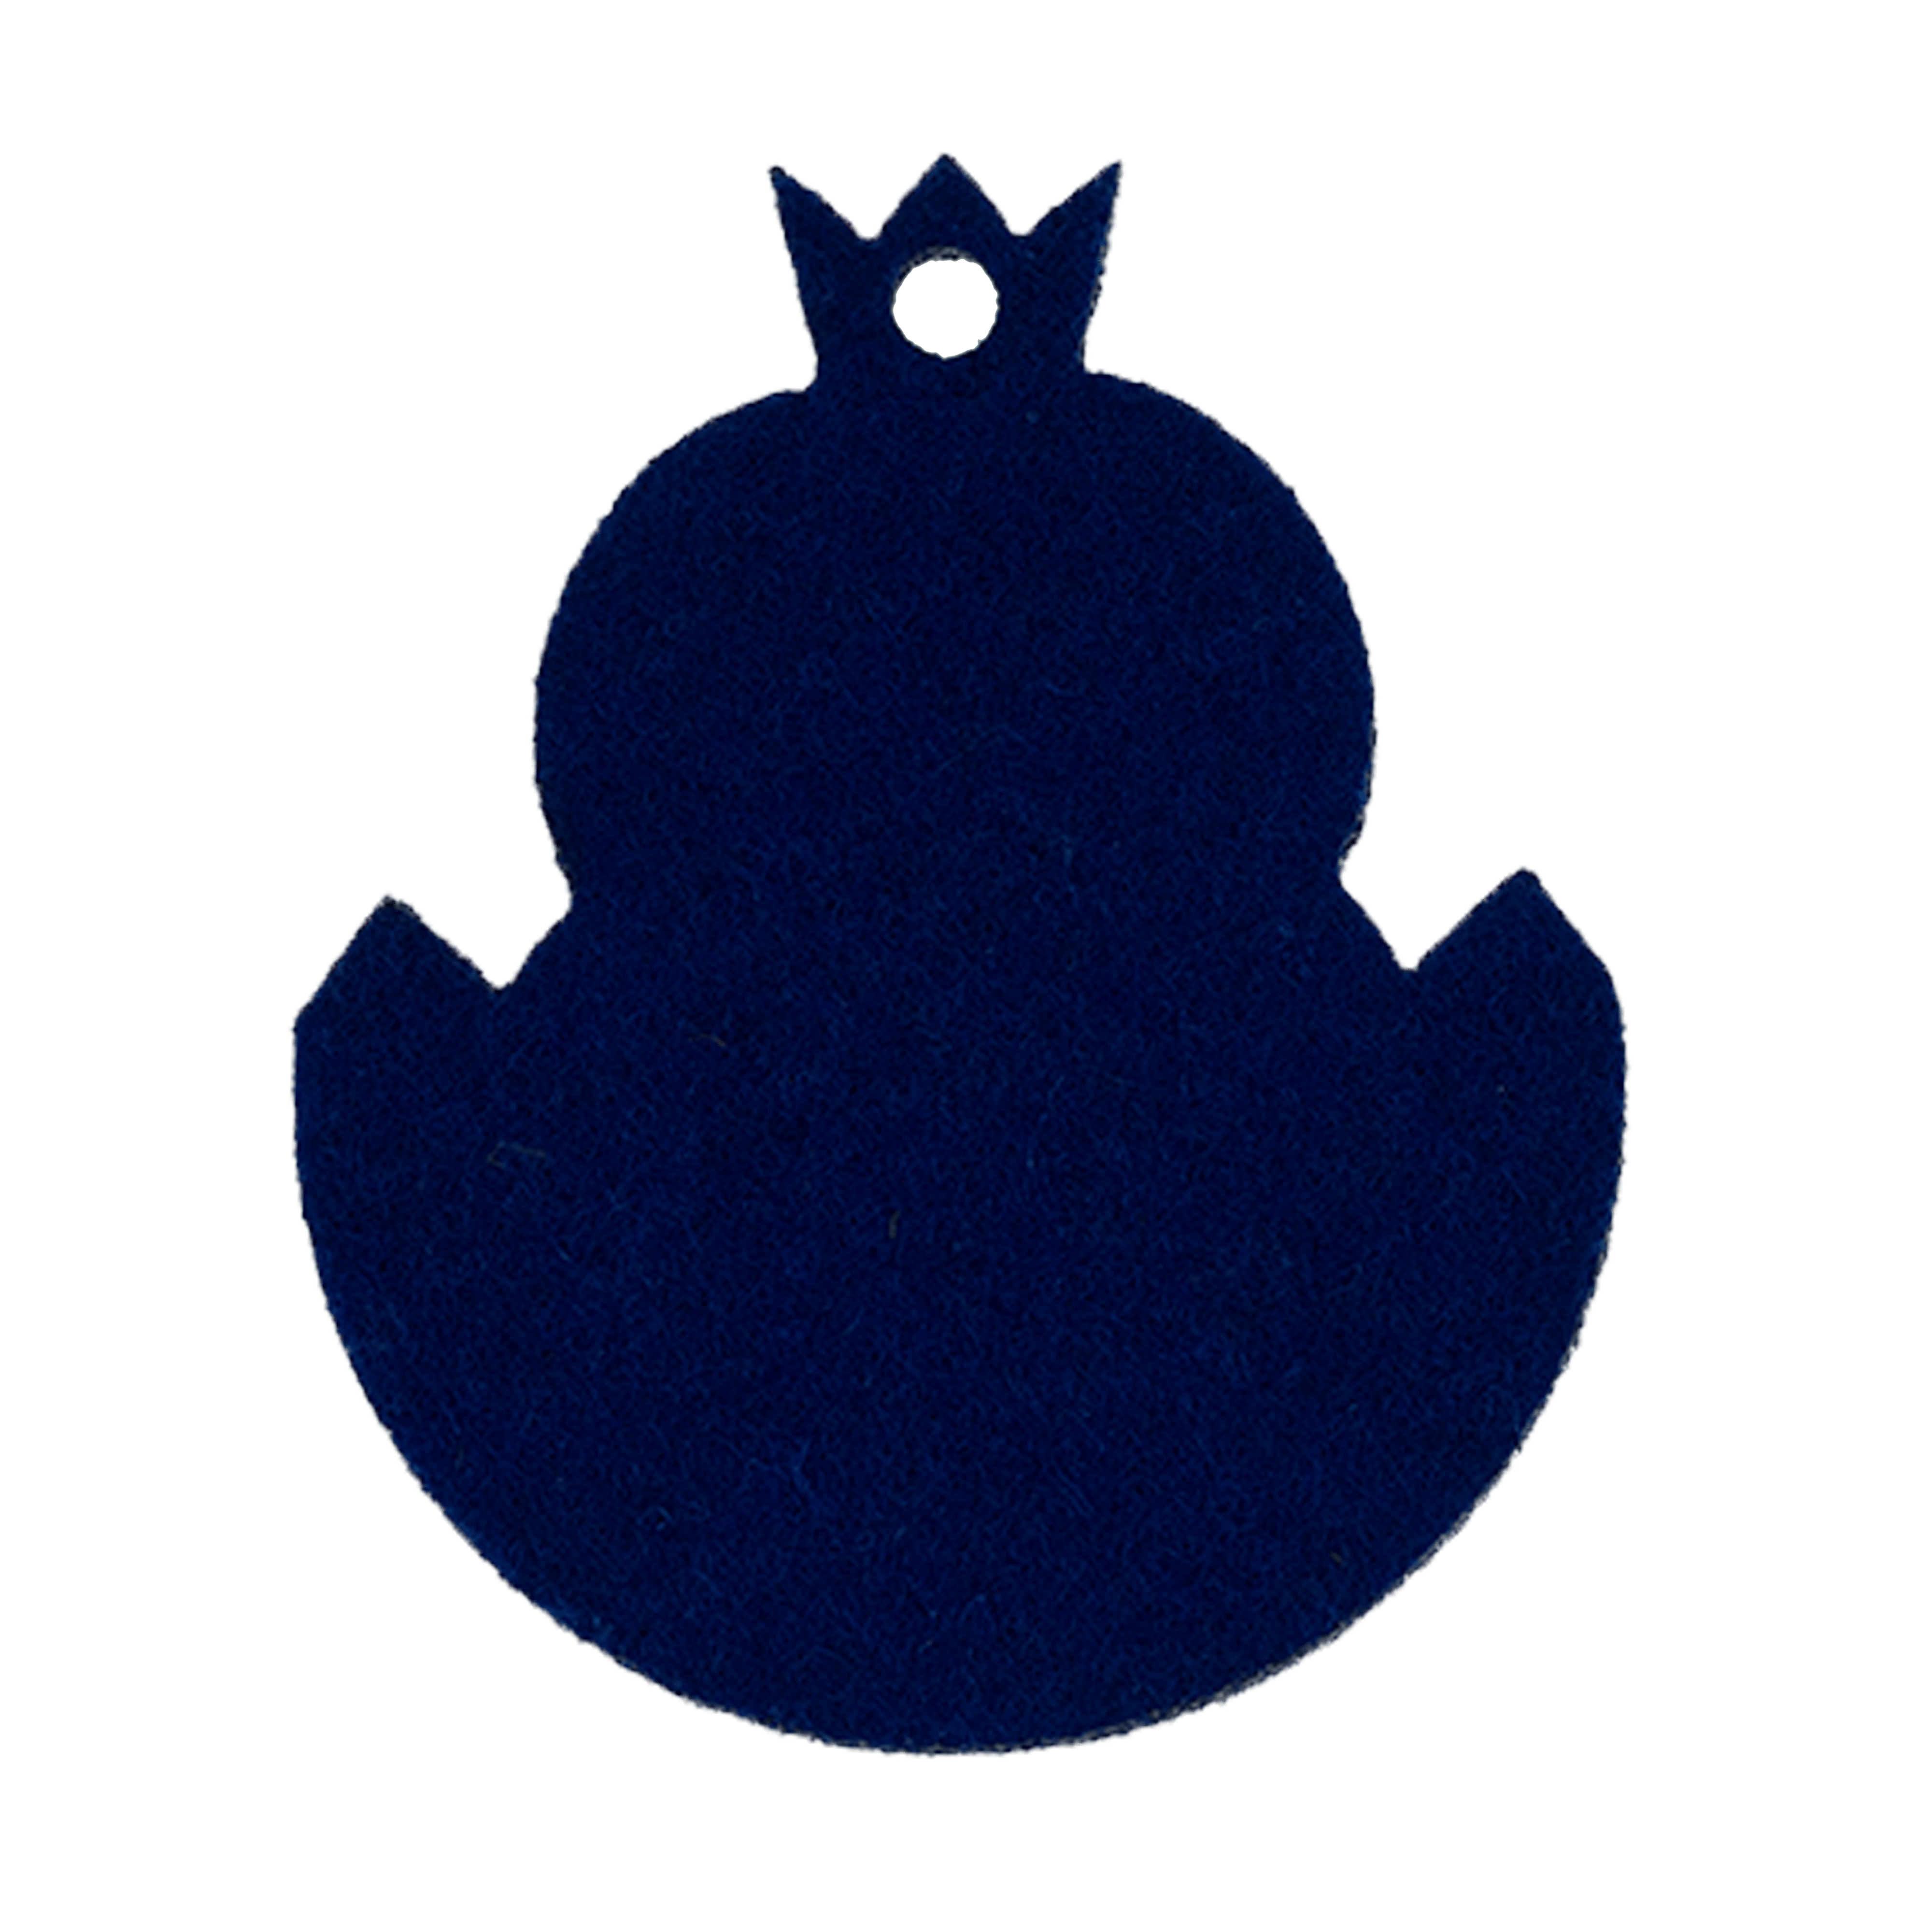 paaskuiken-vilt-koninklijk-blauw